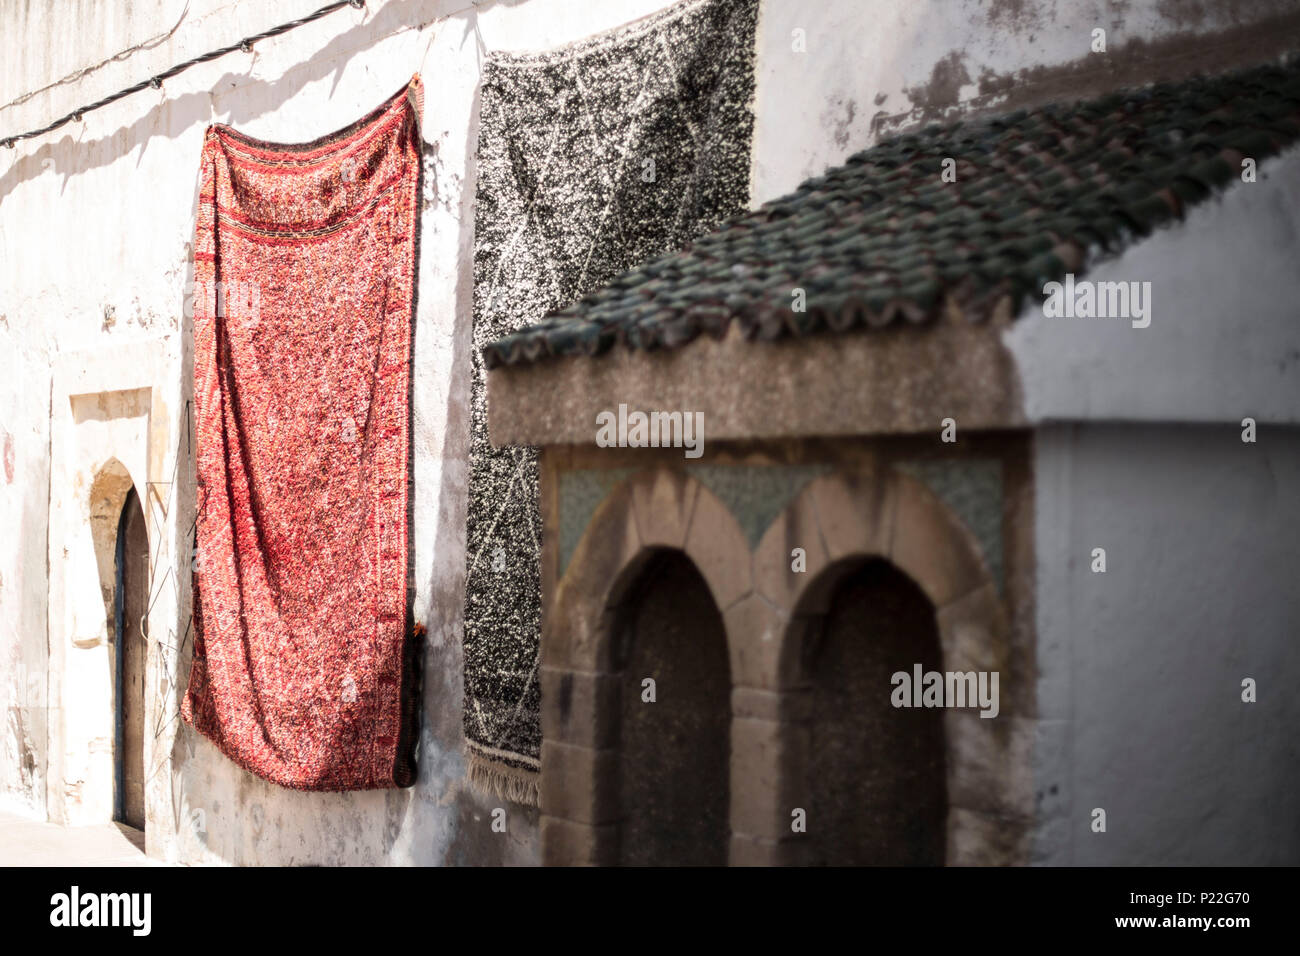 Maroc, Essaouira, chiffon accroché sur une façade de maison Banque D'Images